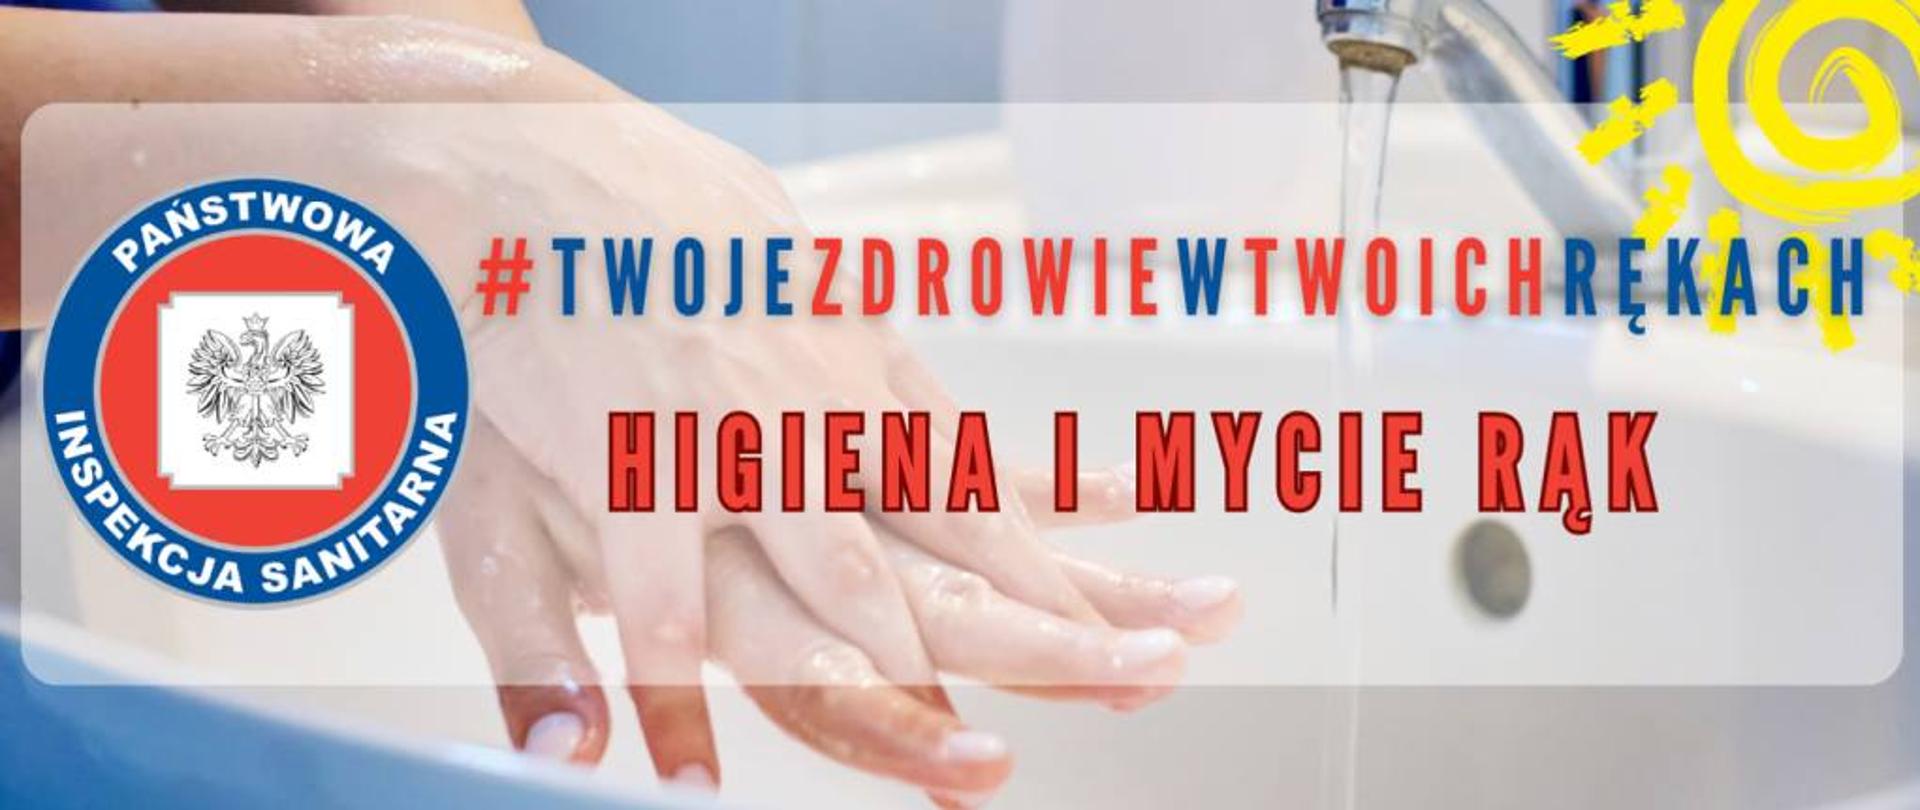 Grafika przedstawia zdjęcie splecionych dłoni w trakcie mycia rąk, obok kran z lecącą wodą, w tle zdjęcia znajduje się napis : #twojezdrowiewtwoichrękach higiena i mycie rąk, obok napisu logo Inspekcji sanitarnej 